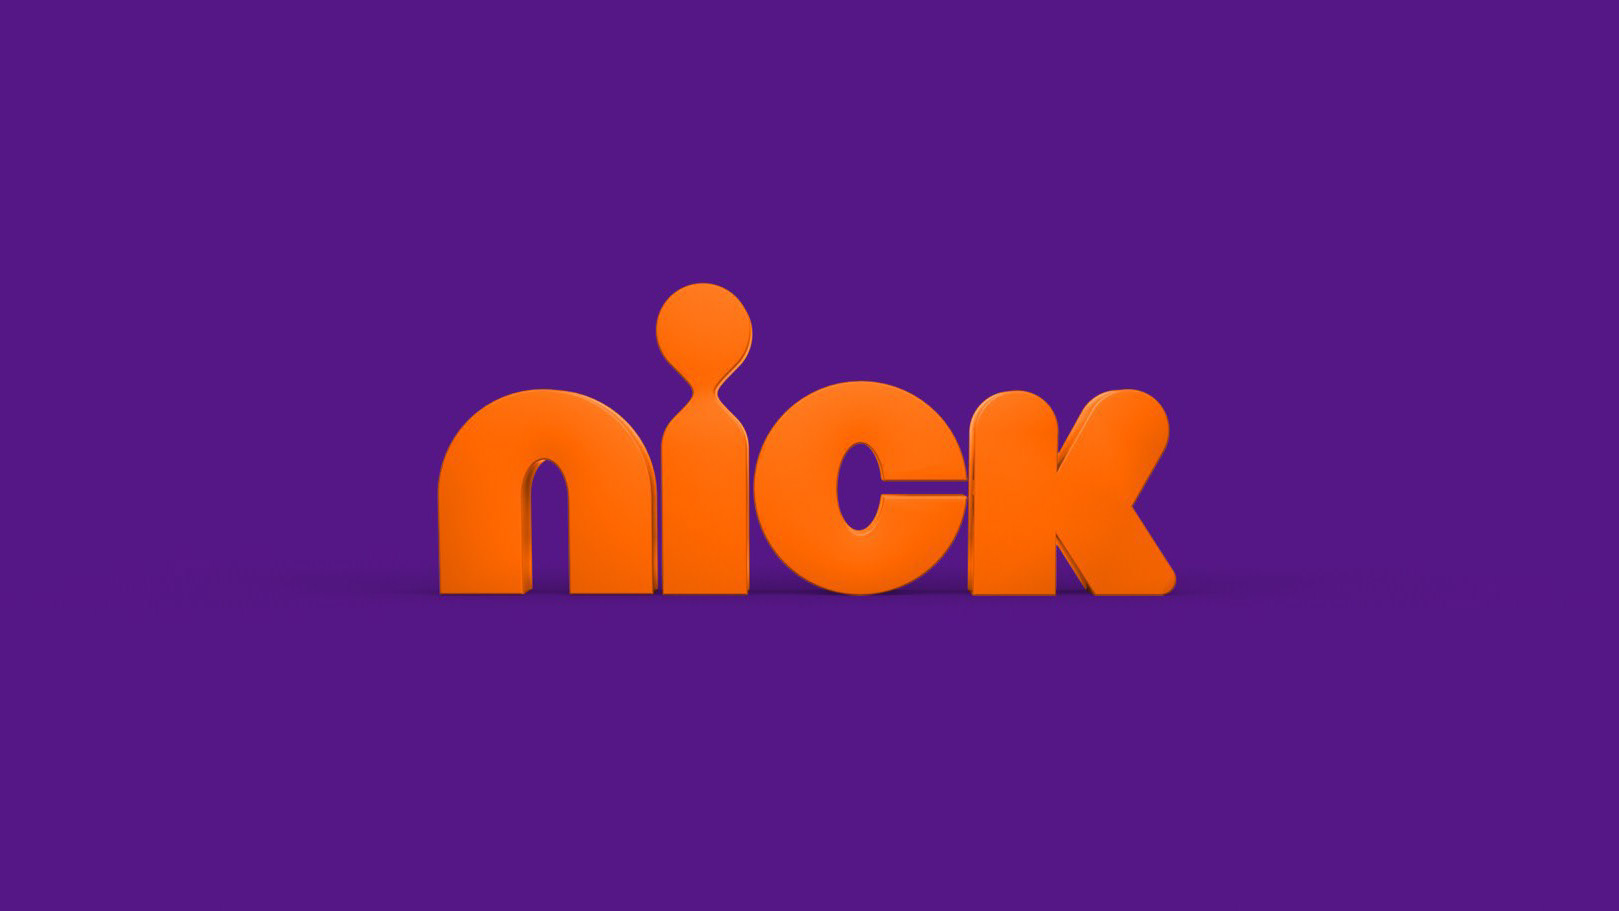 Телеканал никелодеон. Никелодеон. Канал Nickelodeon. Никелодеон логотип.